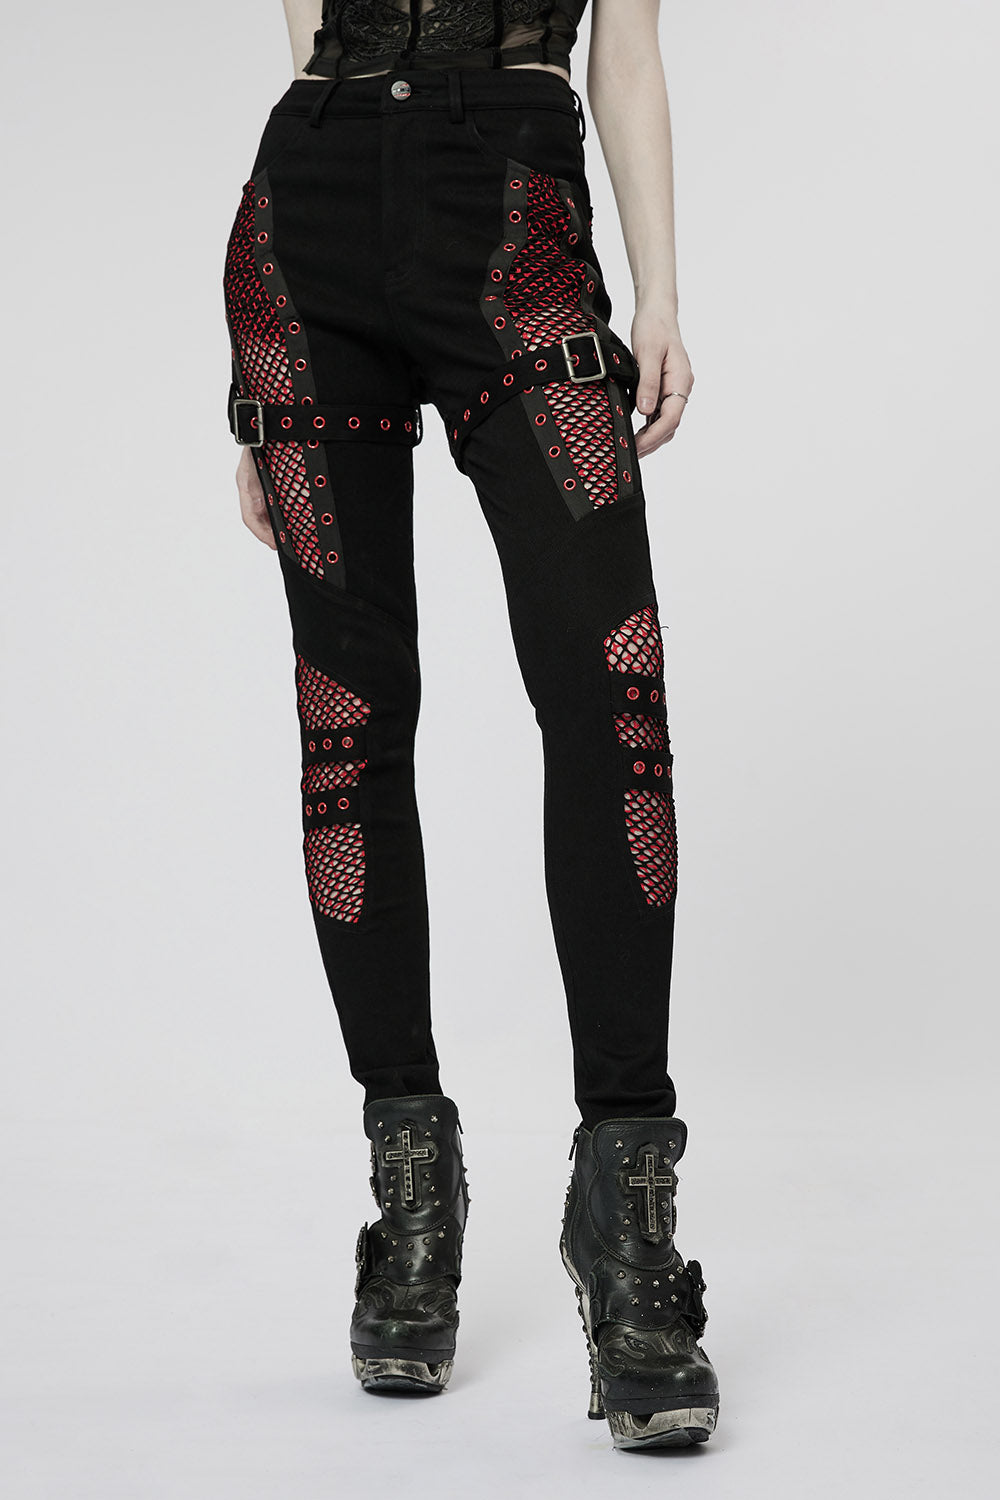 Bloodline Fishnet Skinny Jeans [BLACK/RED]